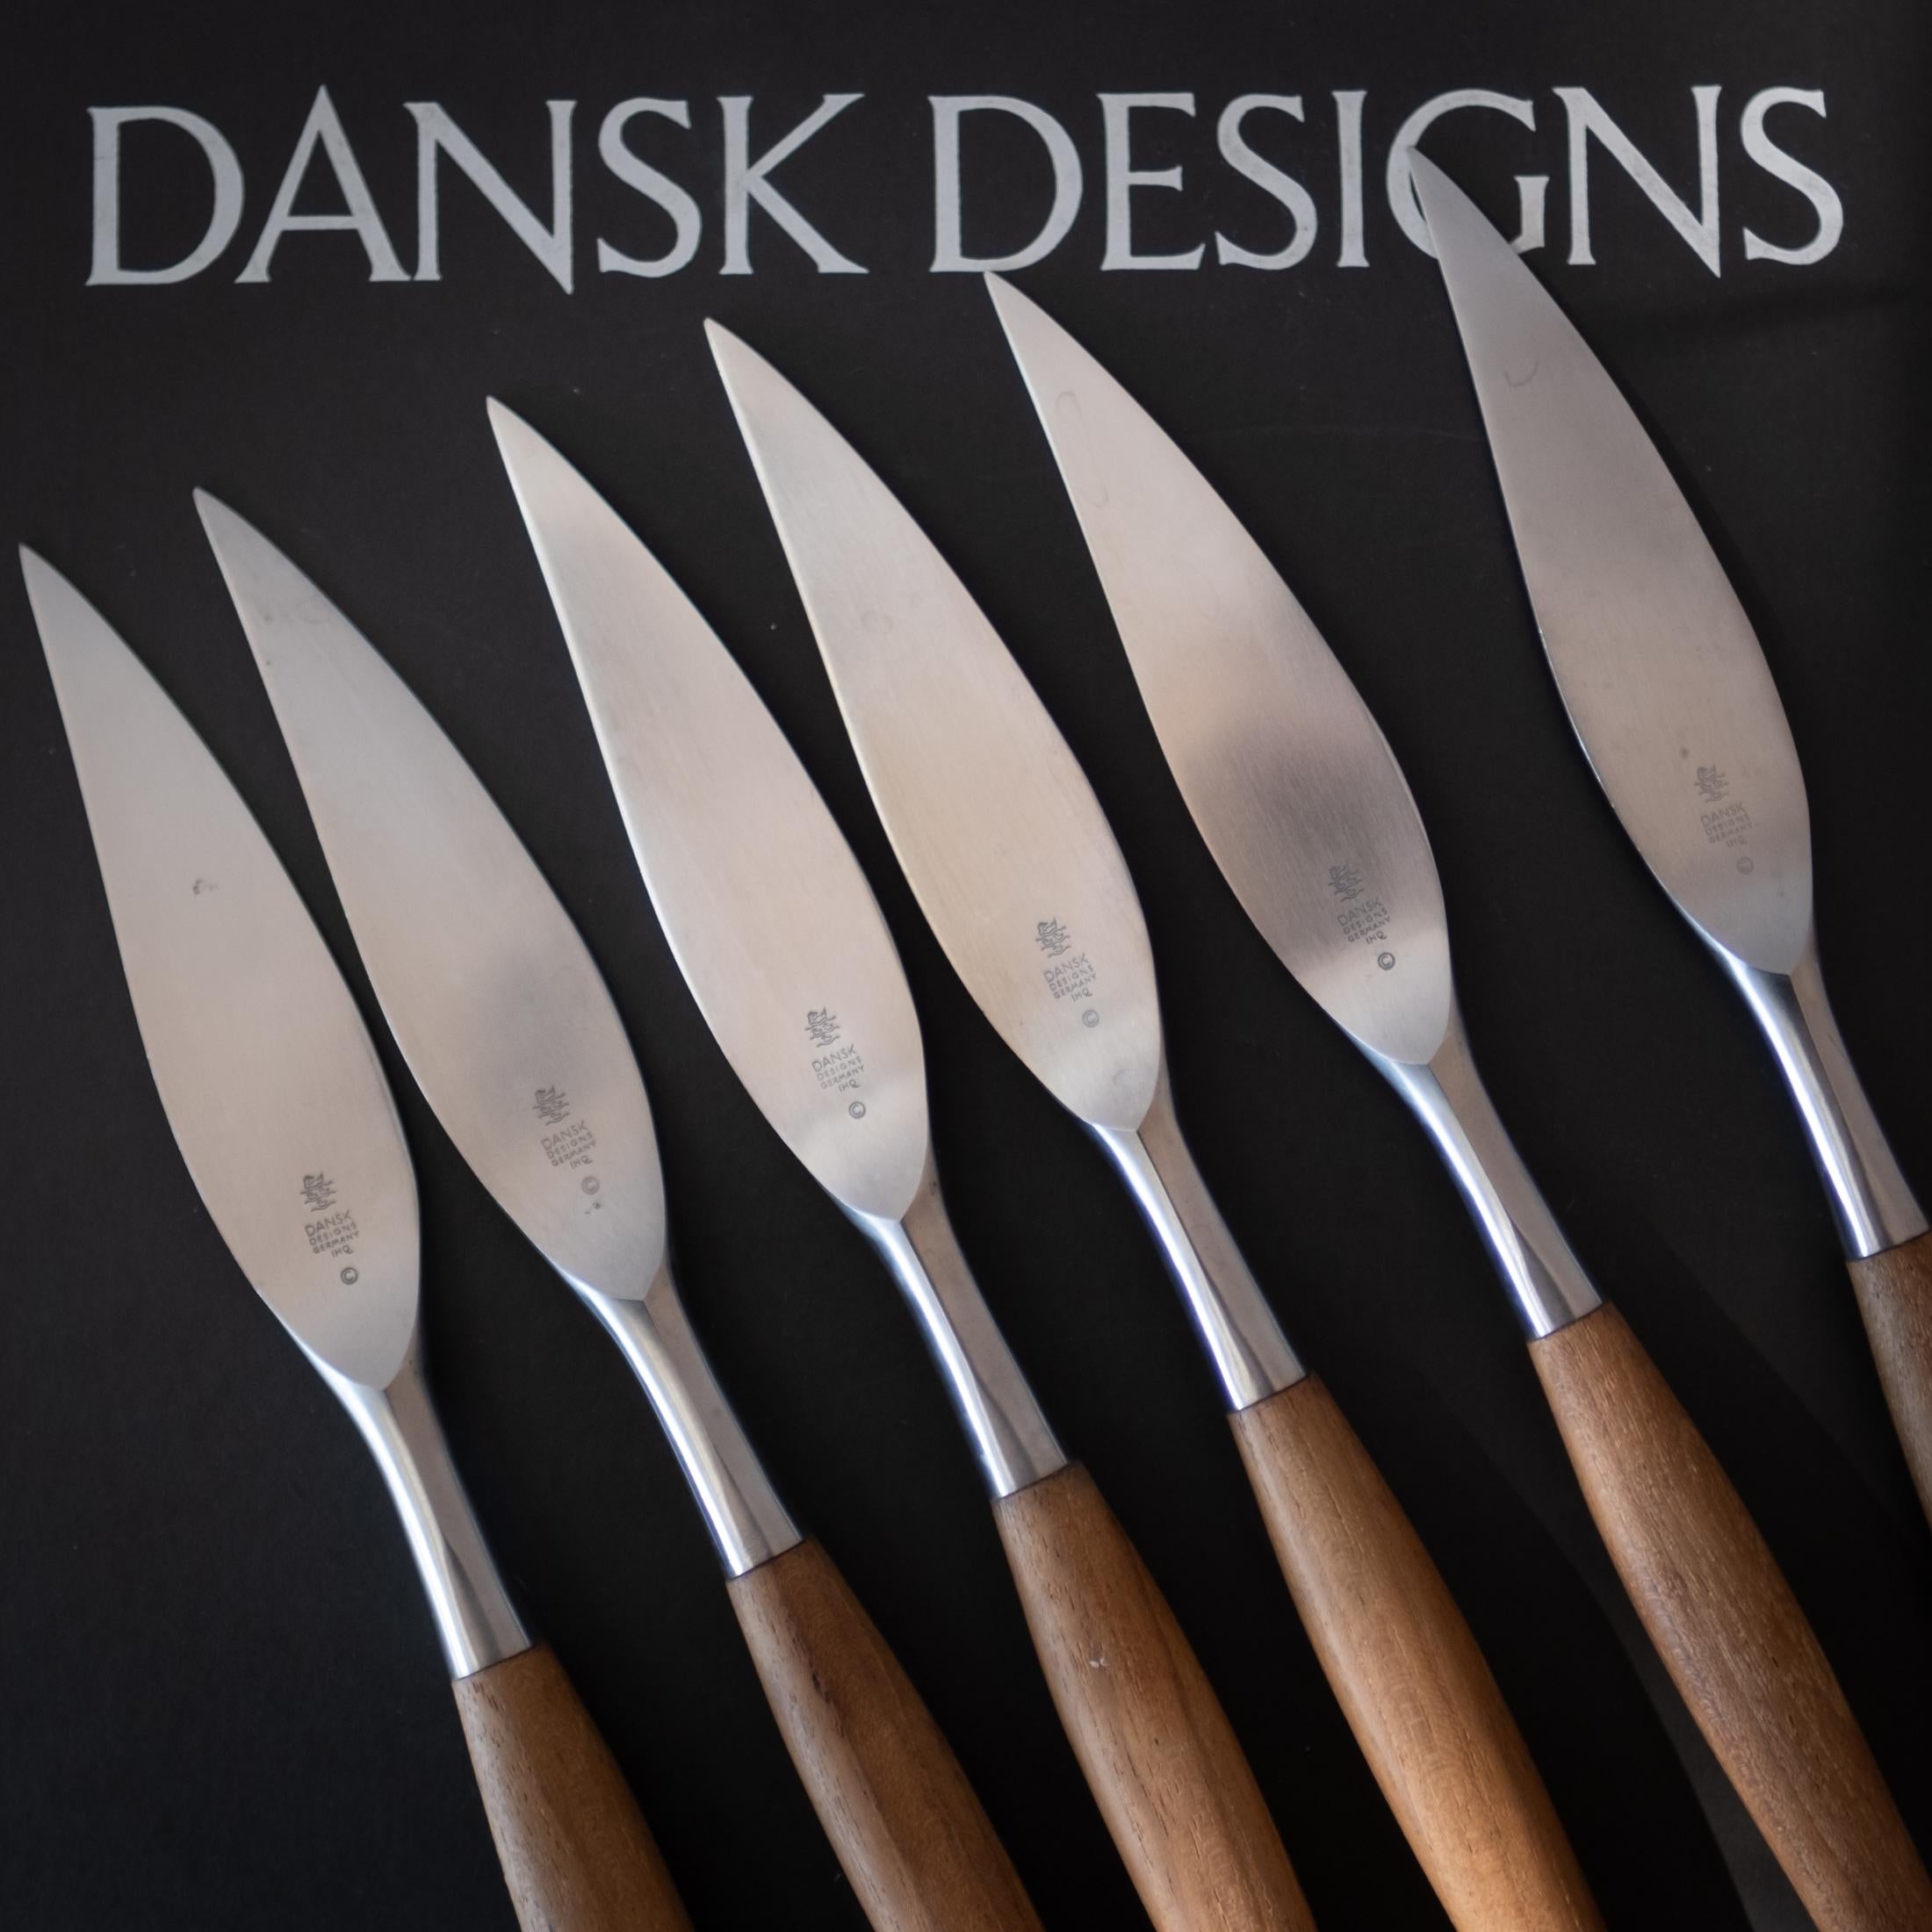 Un ensemble de 6 couteaux à steak Fjord en teck et en acier inoxydable, conçus dans les années 1950 par Jens Quistgaard pour Dansk. Ils semblent à peine utilisés. Livré avec la boîte et les pochettes plastiques d'origine. Ce design fait partie de la